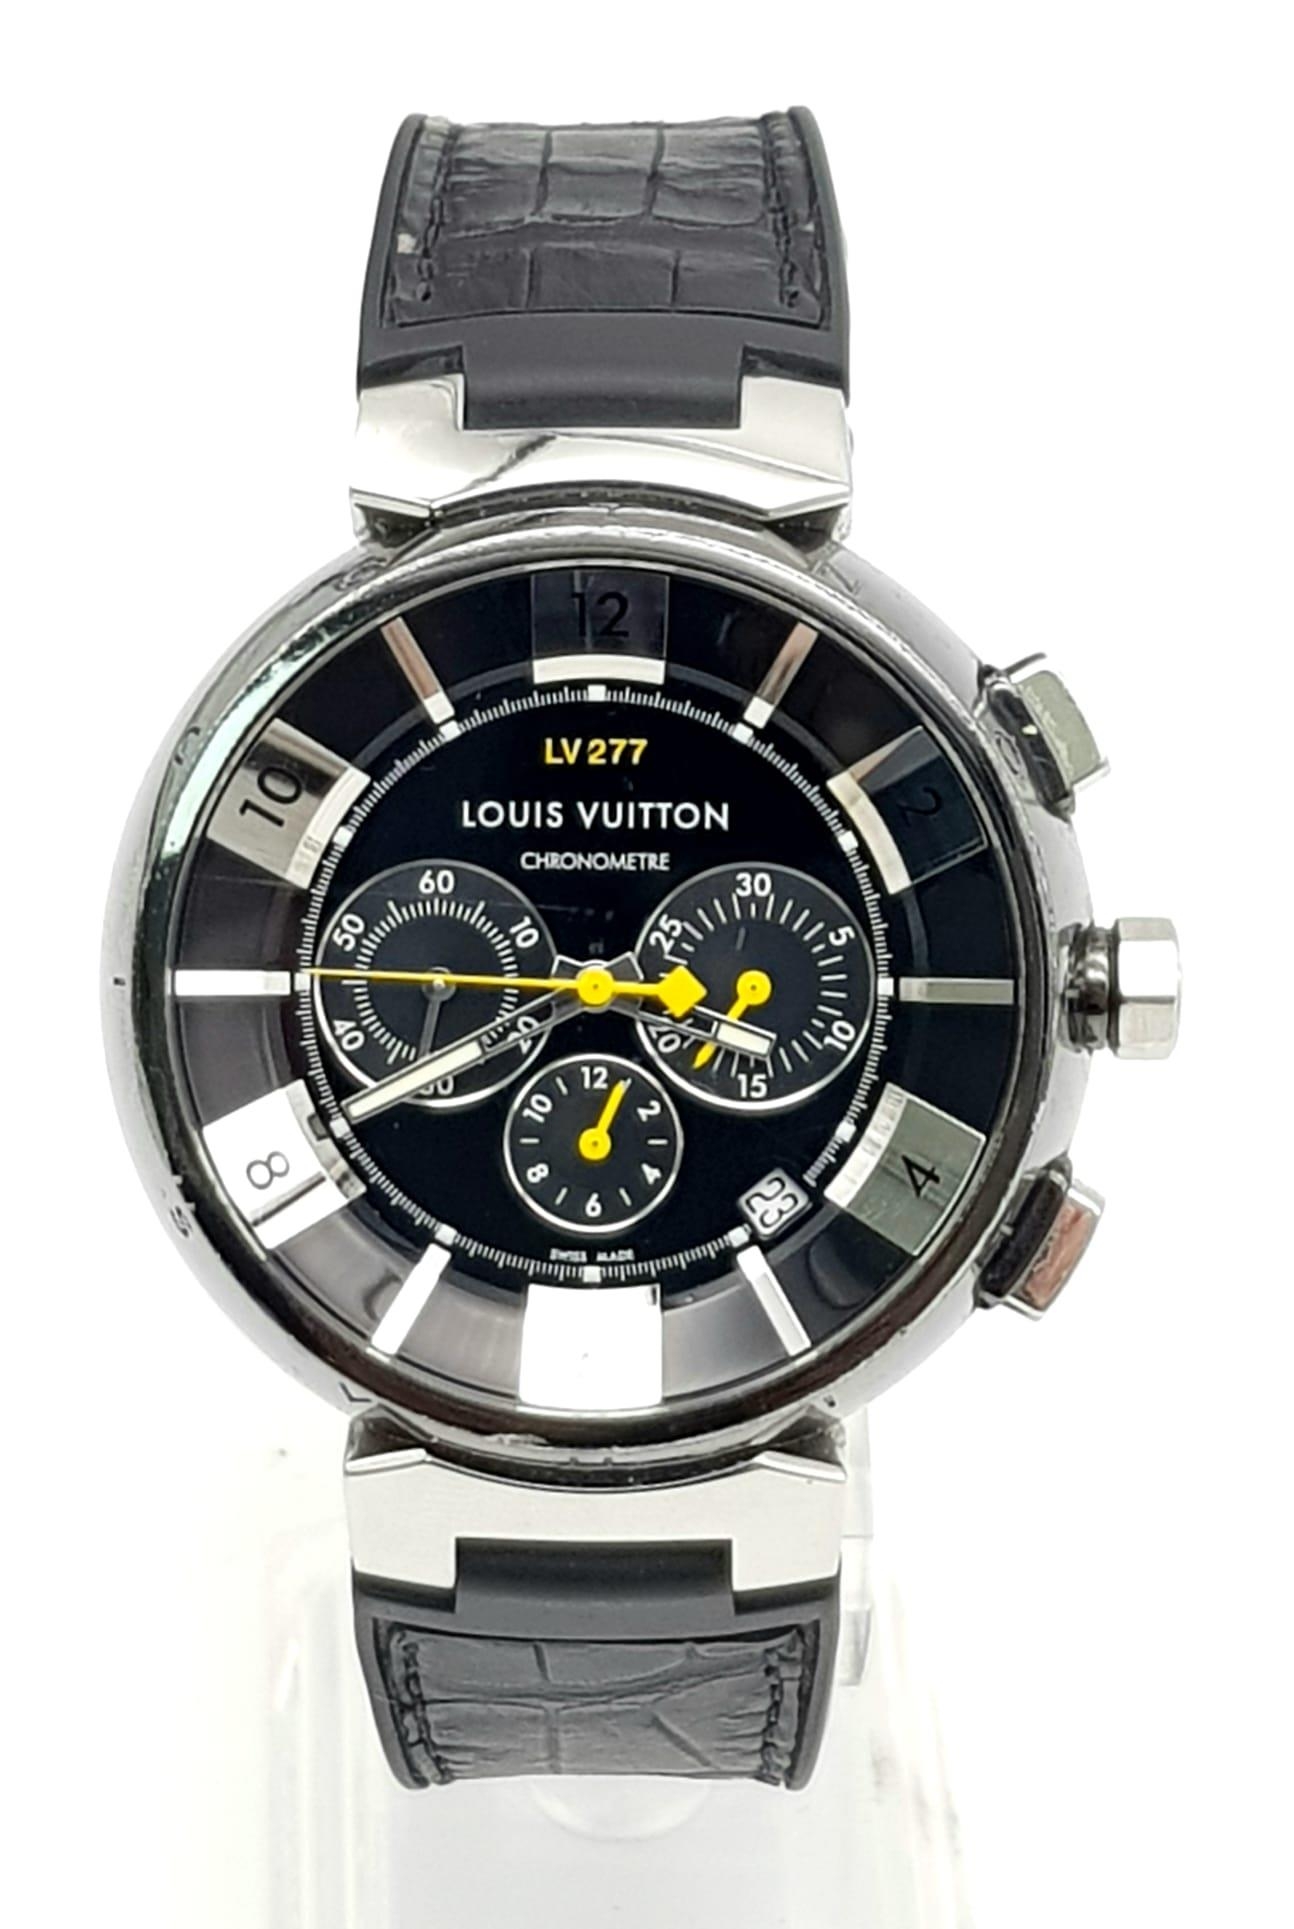 lv277 chronometer